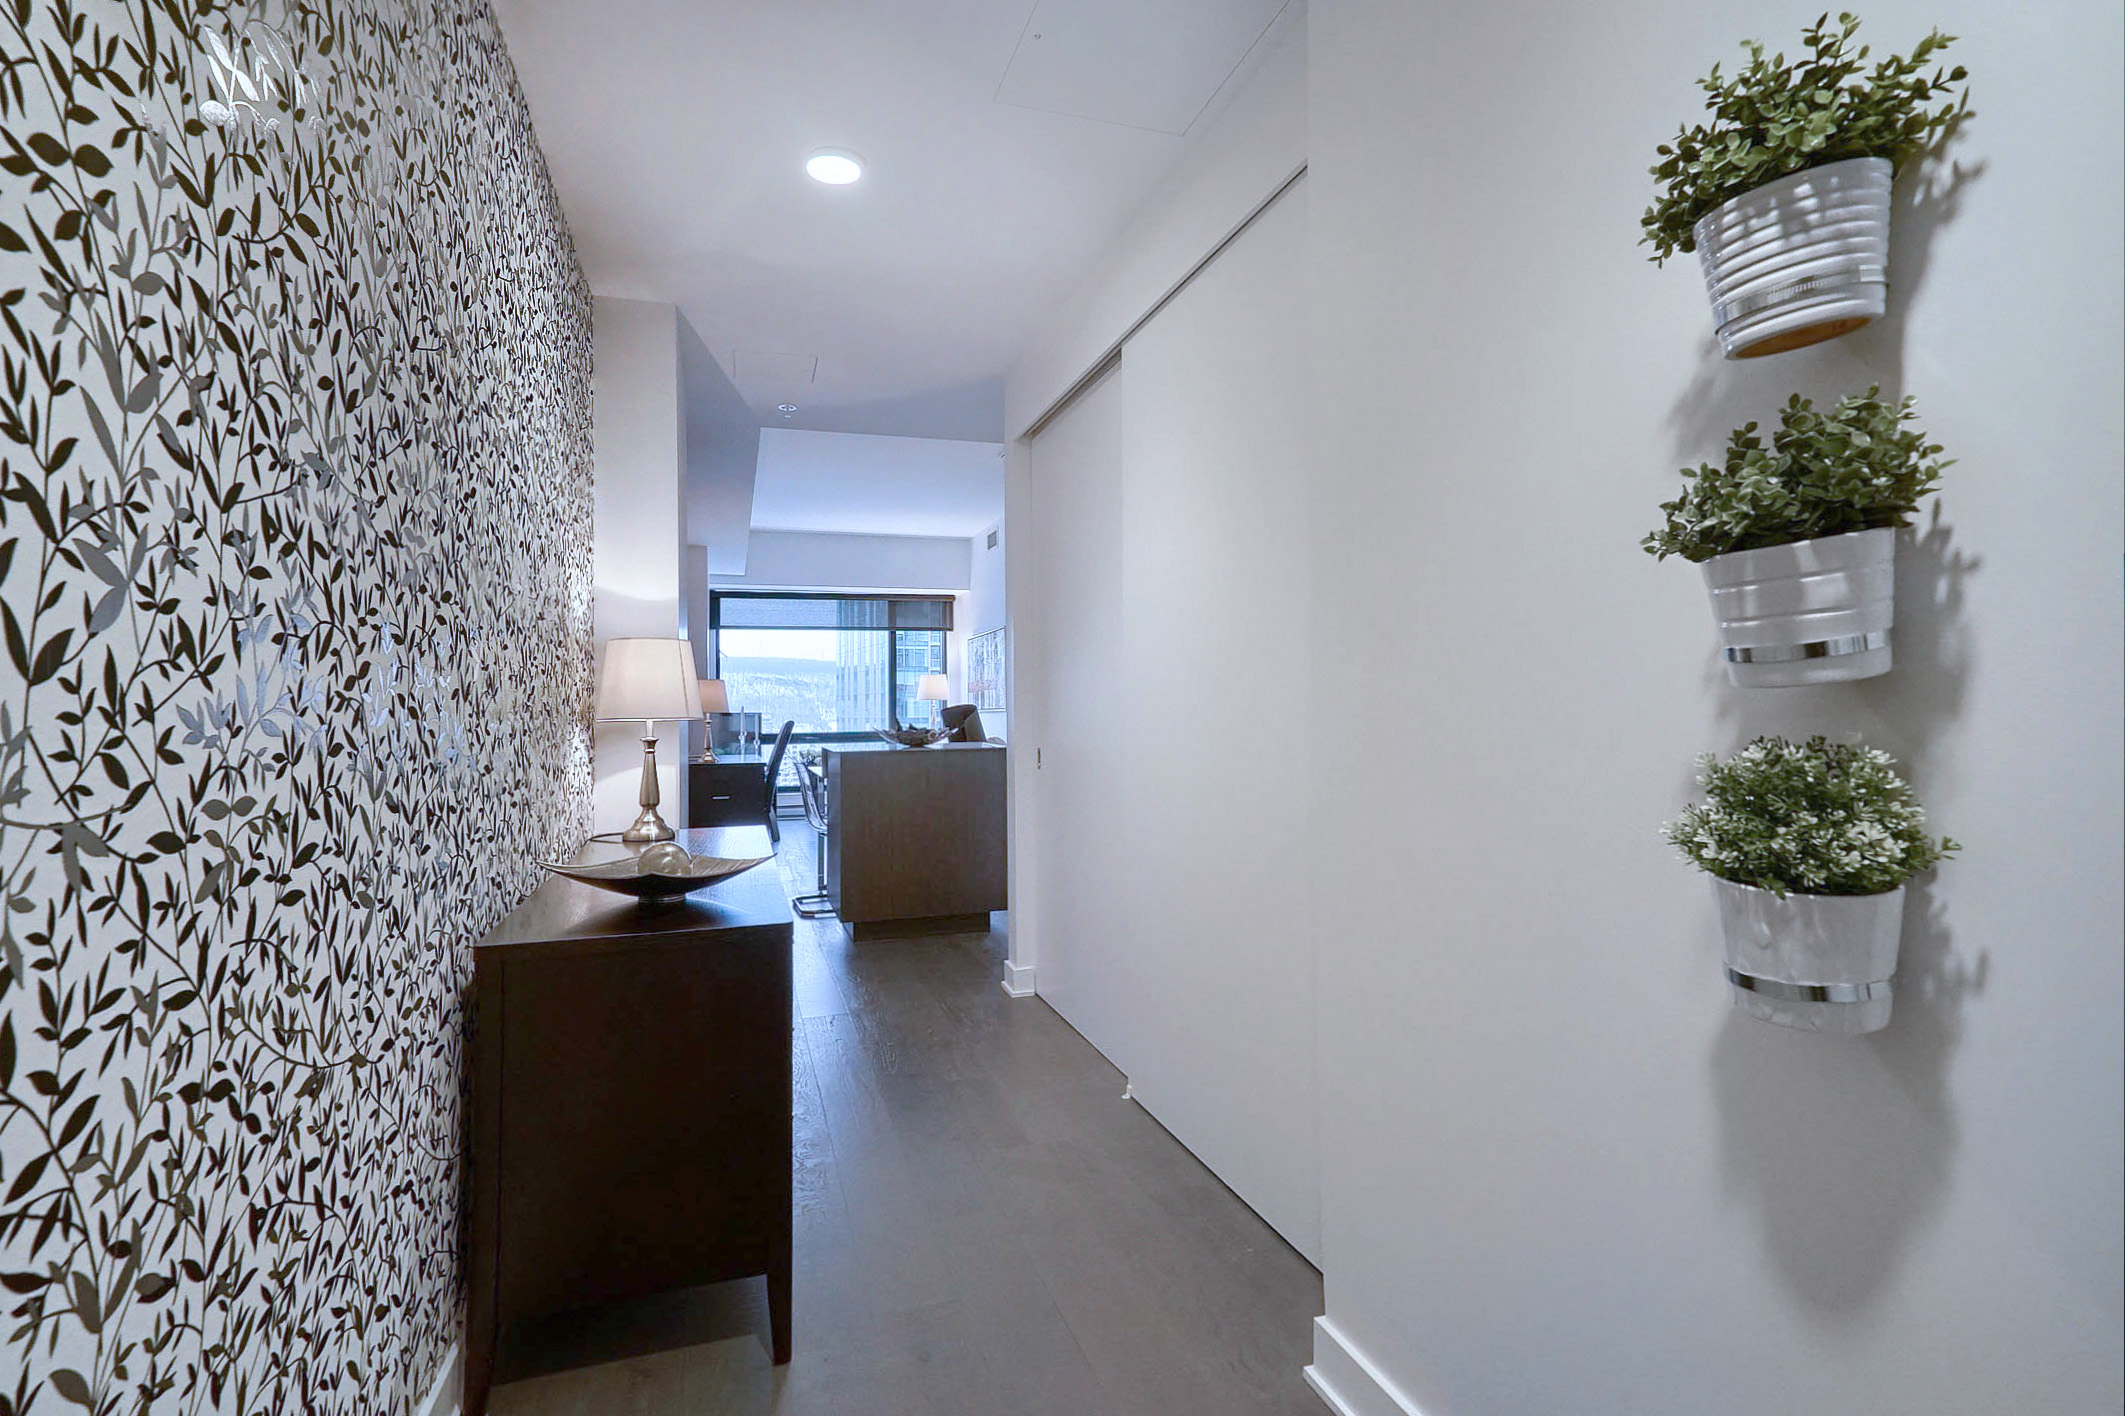 Hall d'entrée de cet appartement entièrement meublé à louer à Montréal. Décorée avec goût, mur floral noir et blanc, belle commode avec vue imprenable sur l'îlot de cuisine